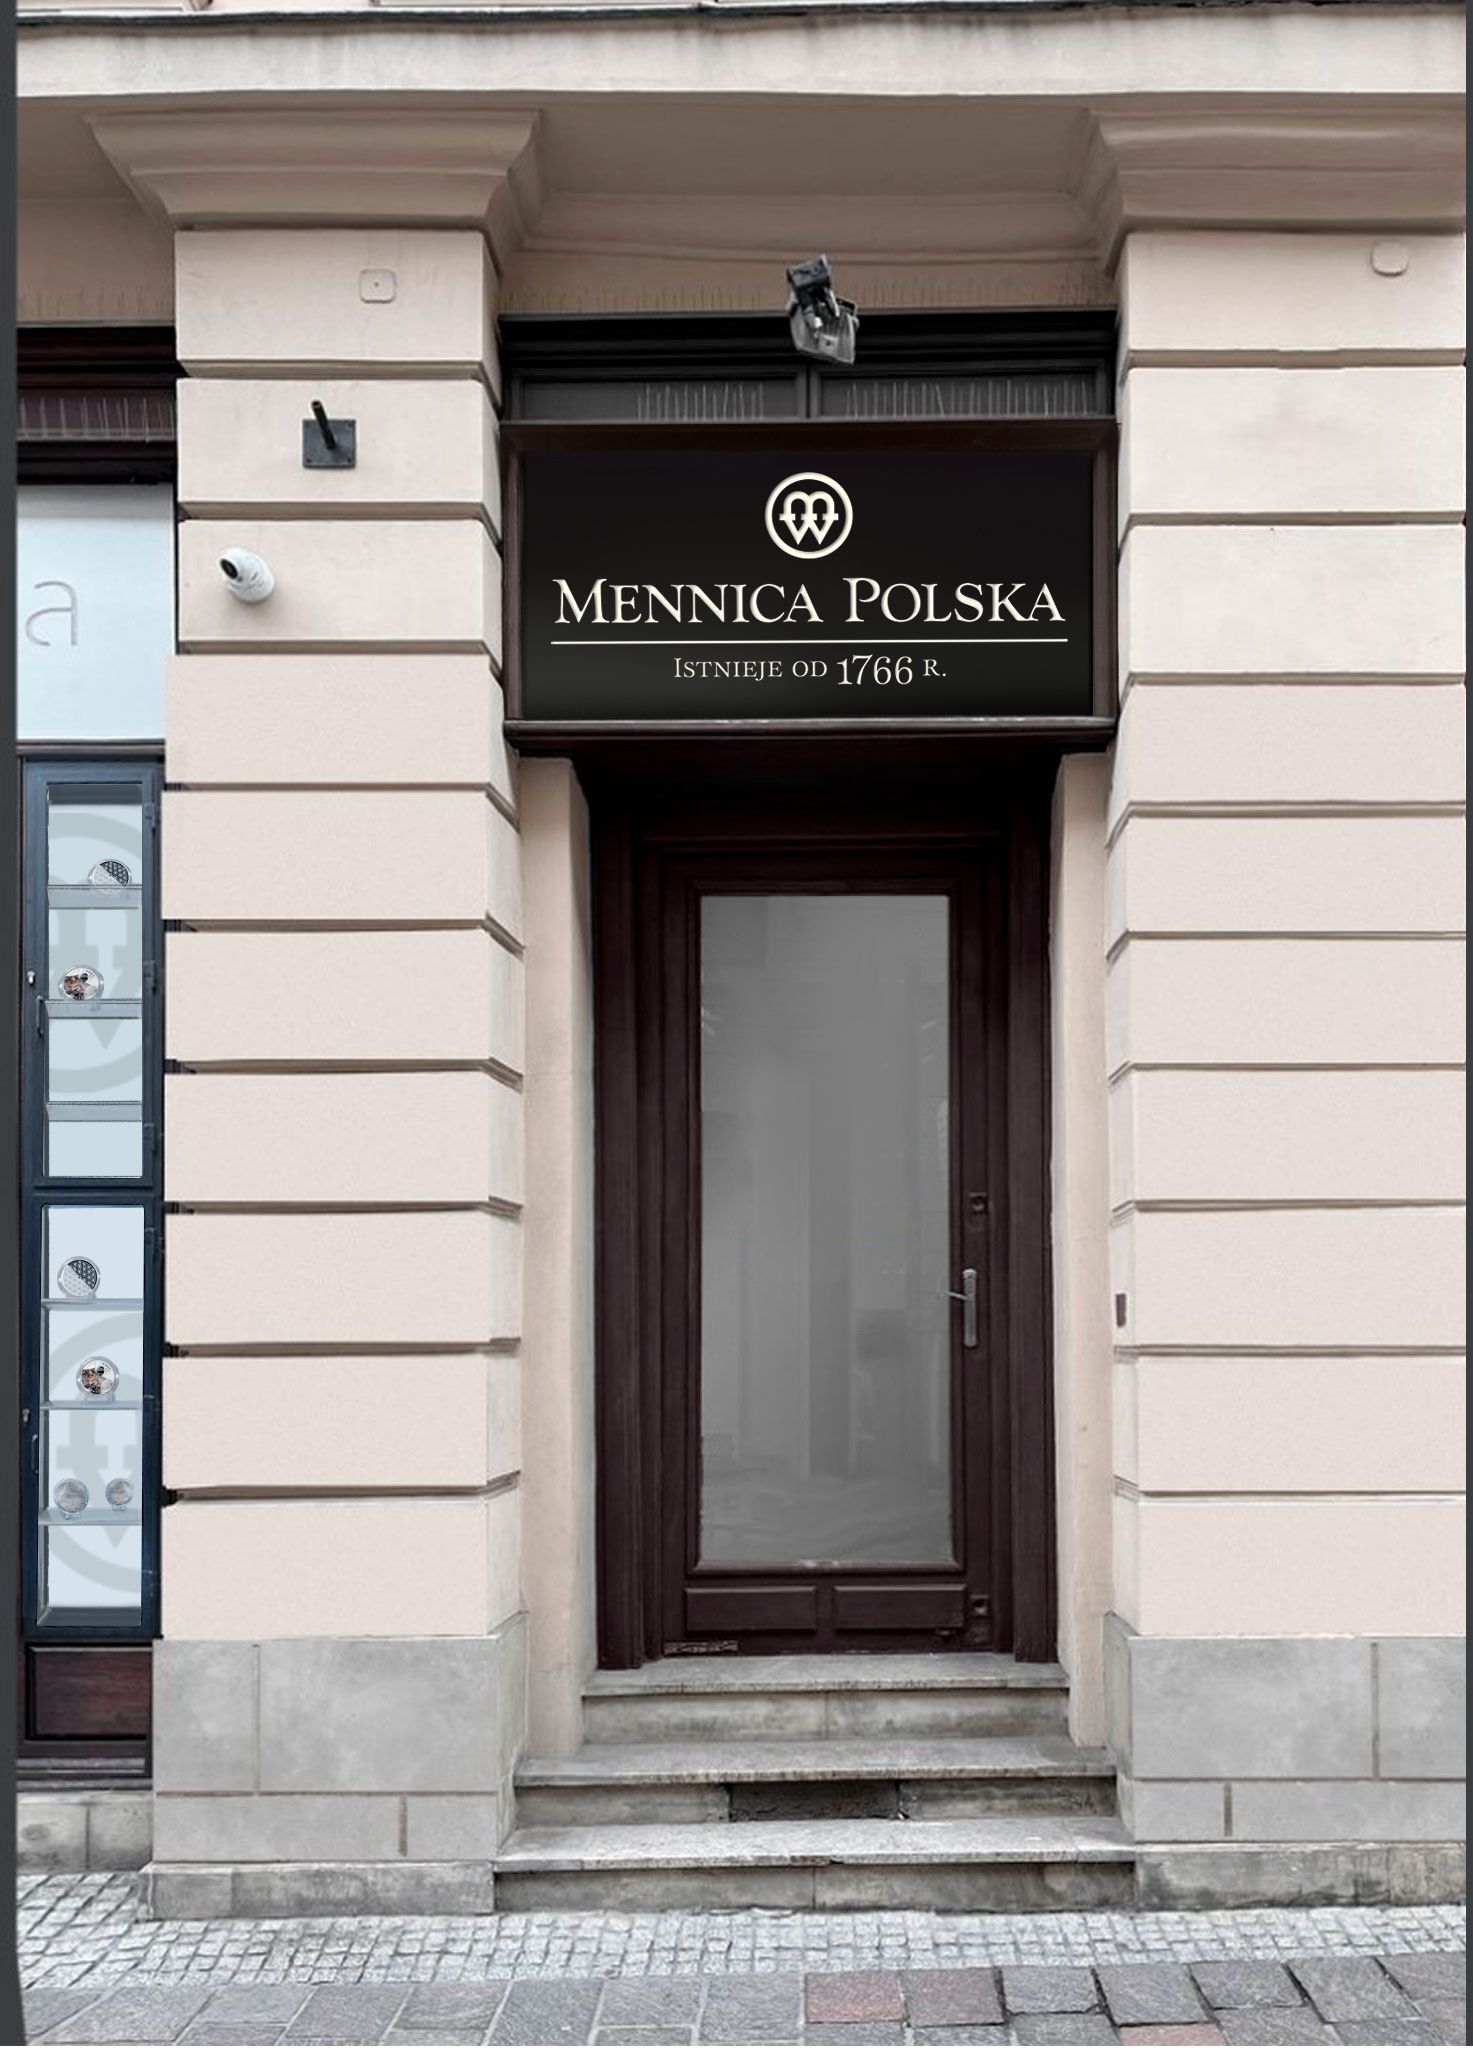 Sklep firmowy Mennicy Polskiej w Poznaniu